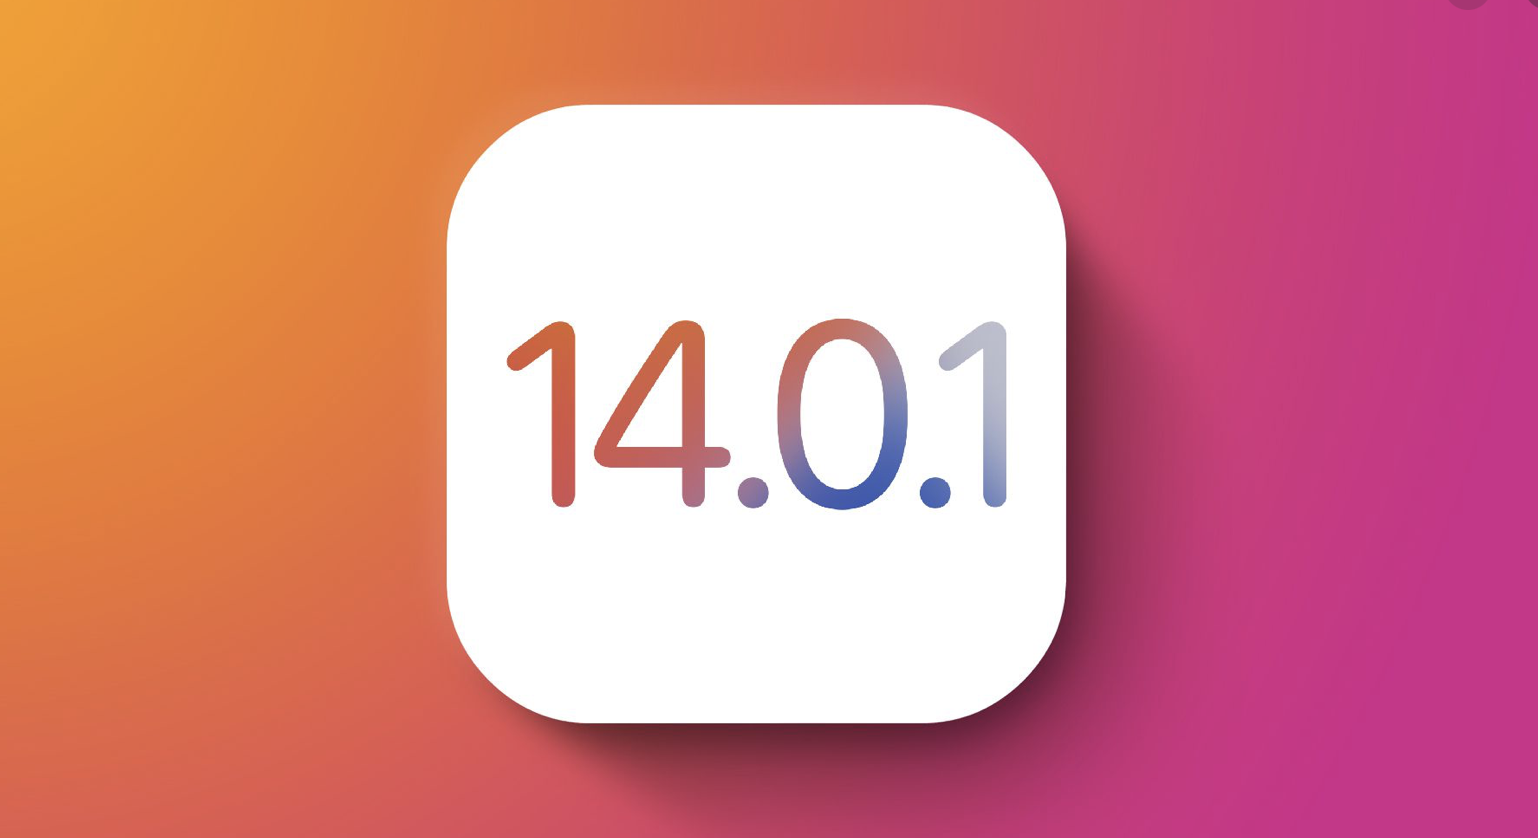 Letölthető az iOS 14.0.1